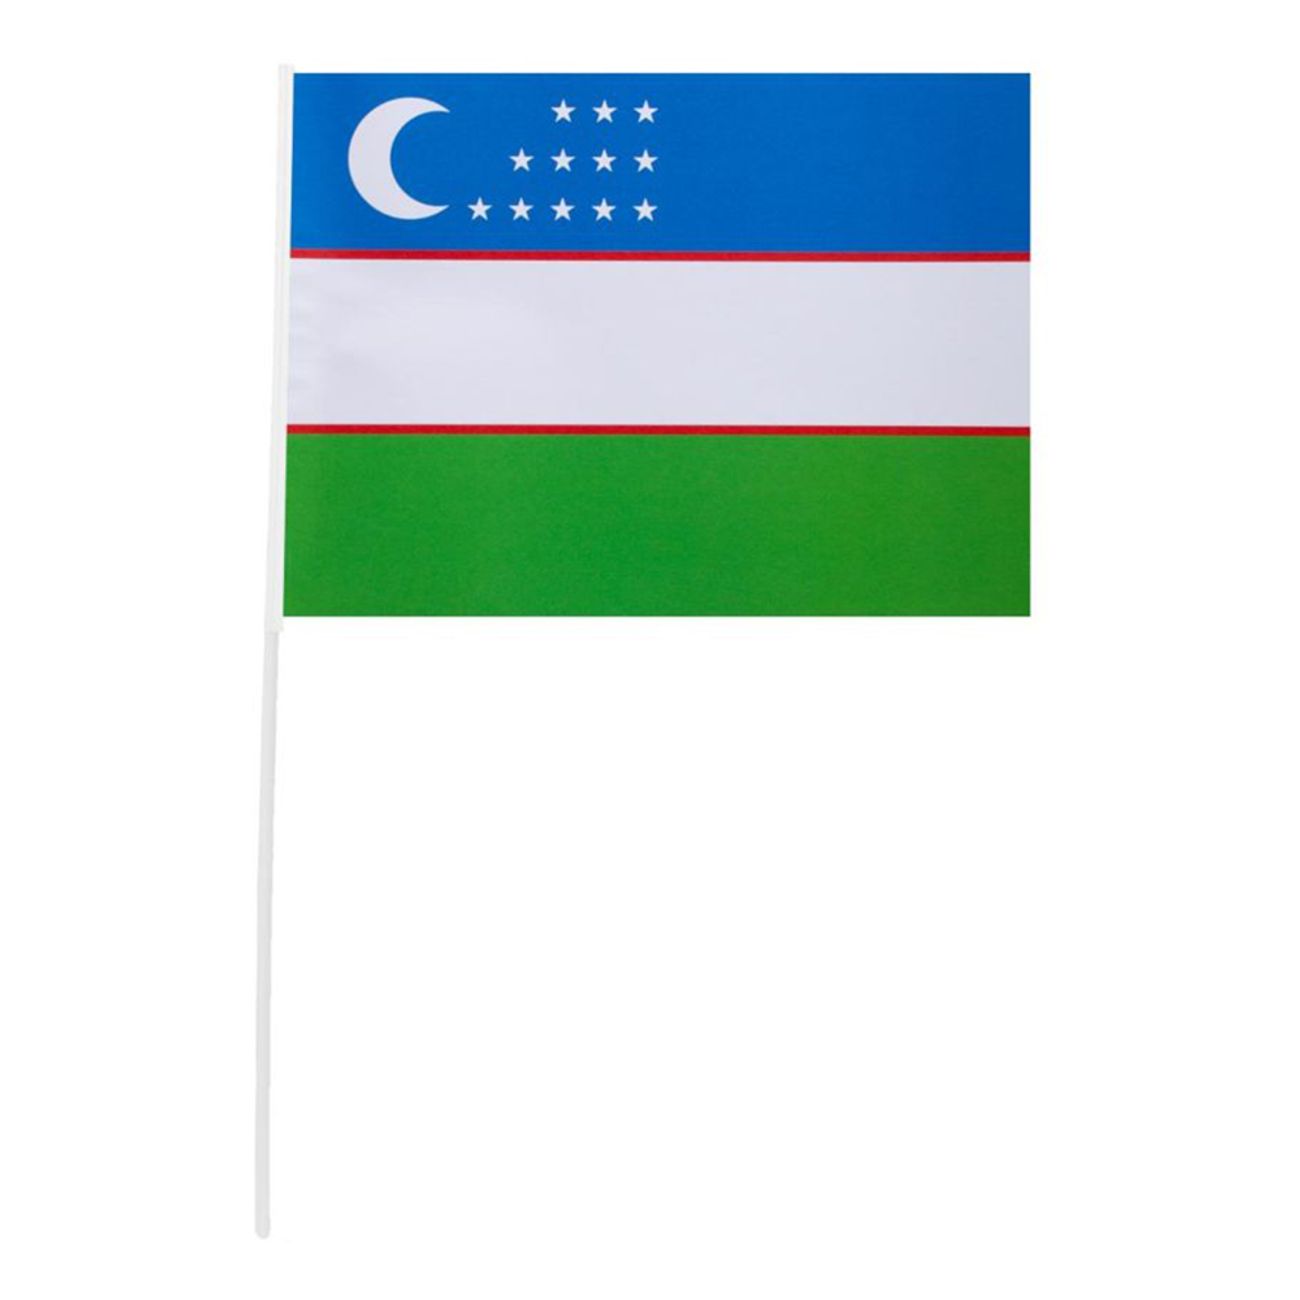 pappersflagga-uzbekistan-81490-1